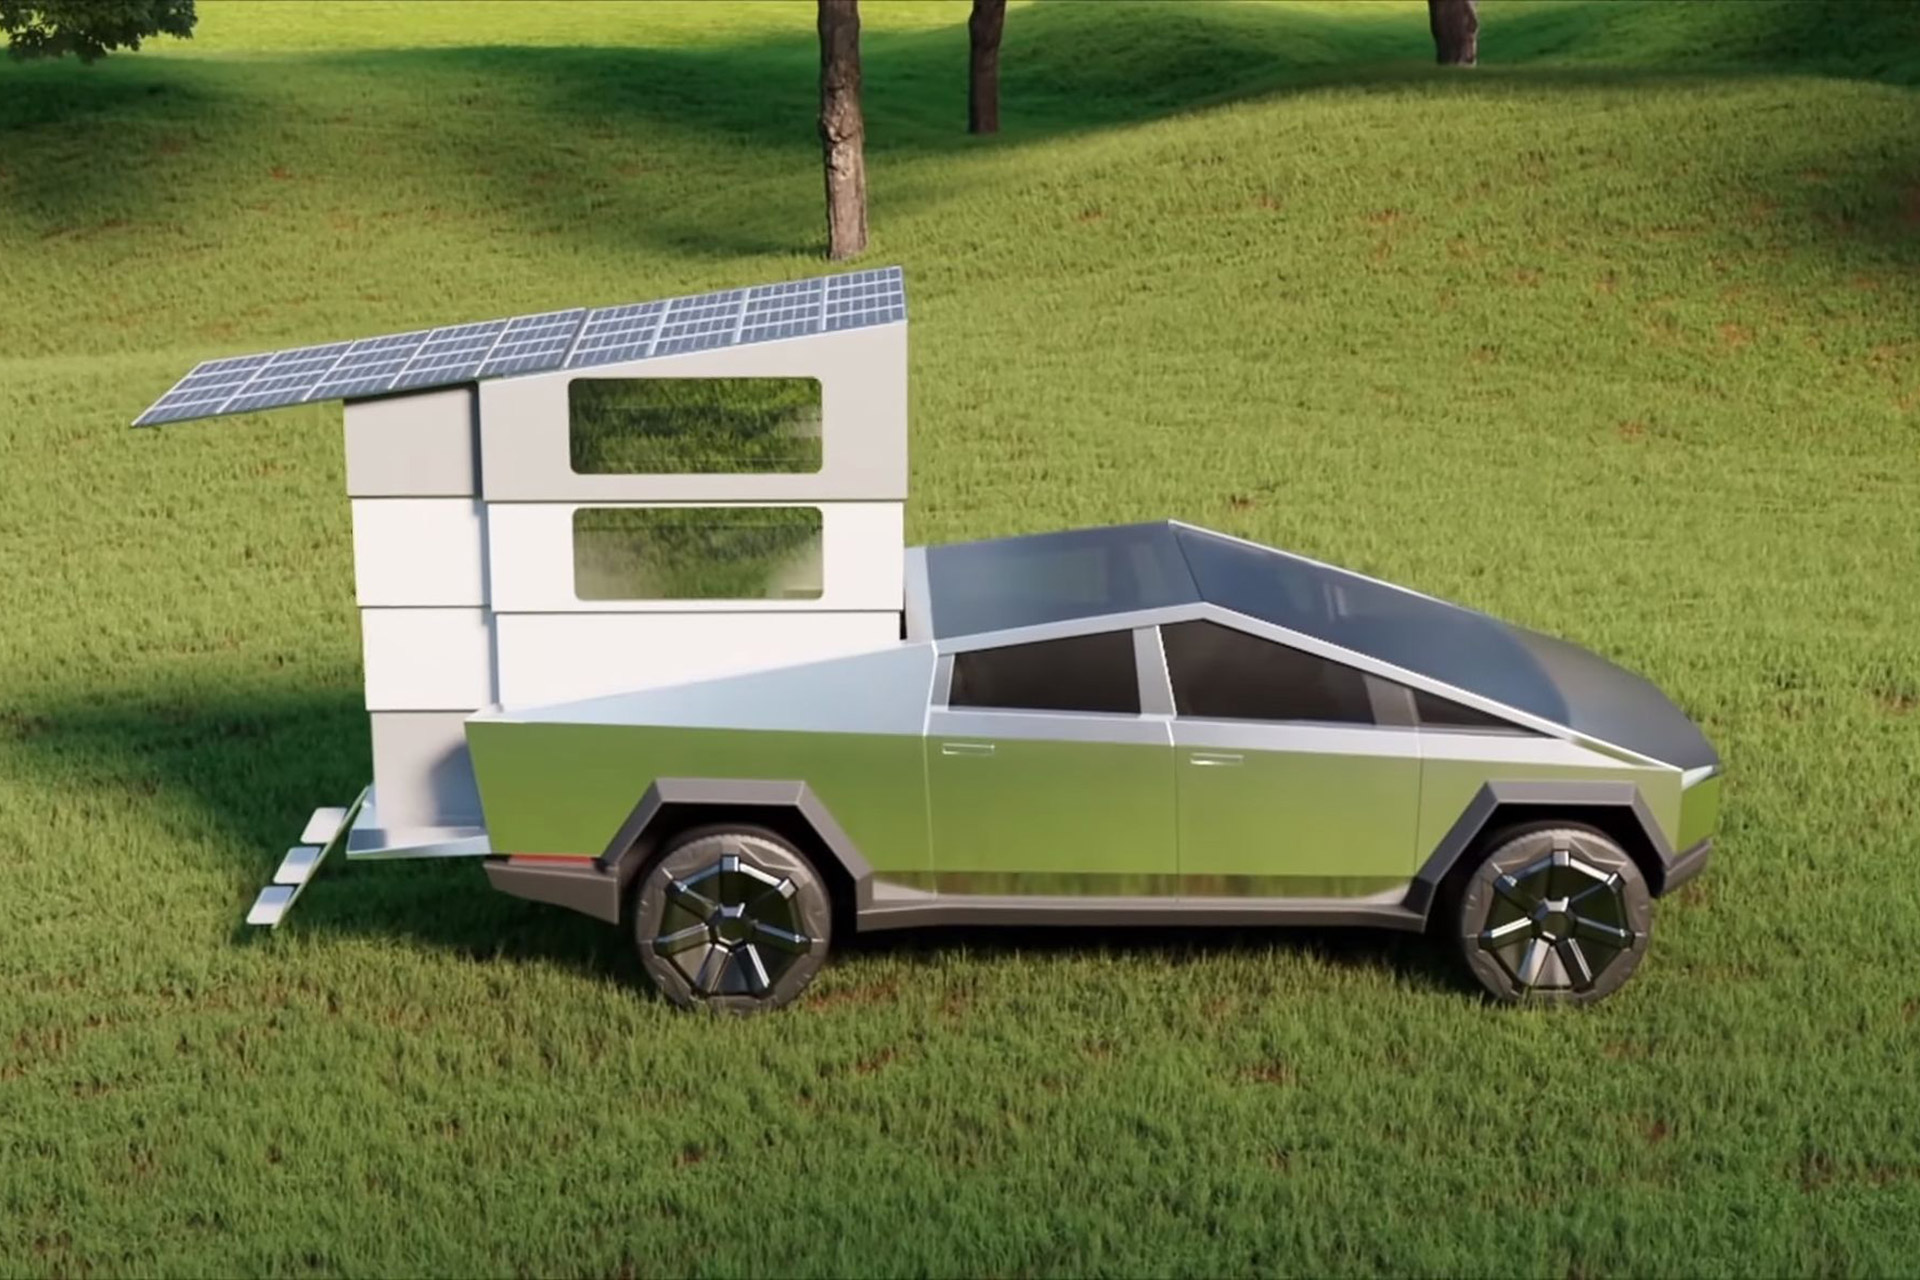 Tesla Truck Camper Attachment